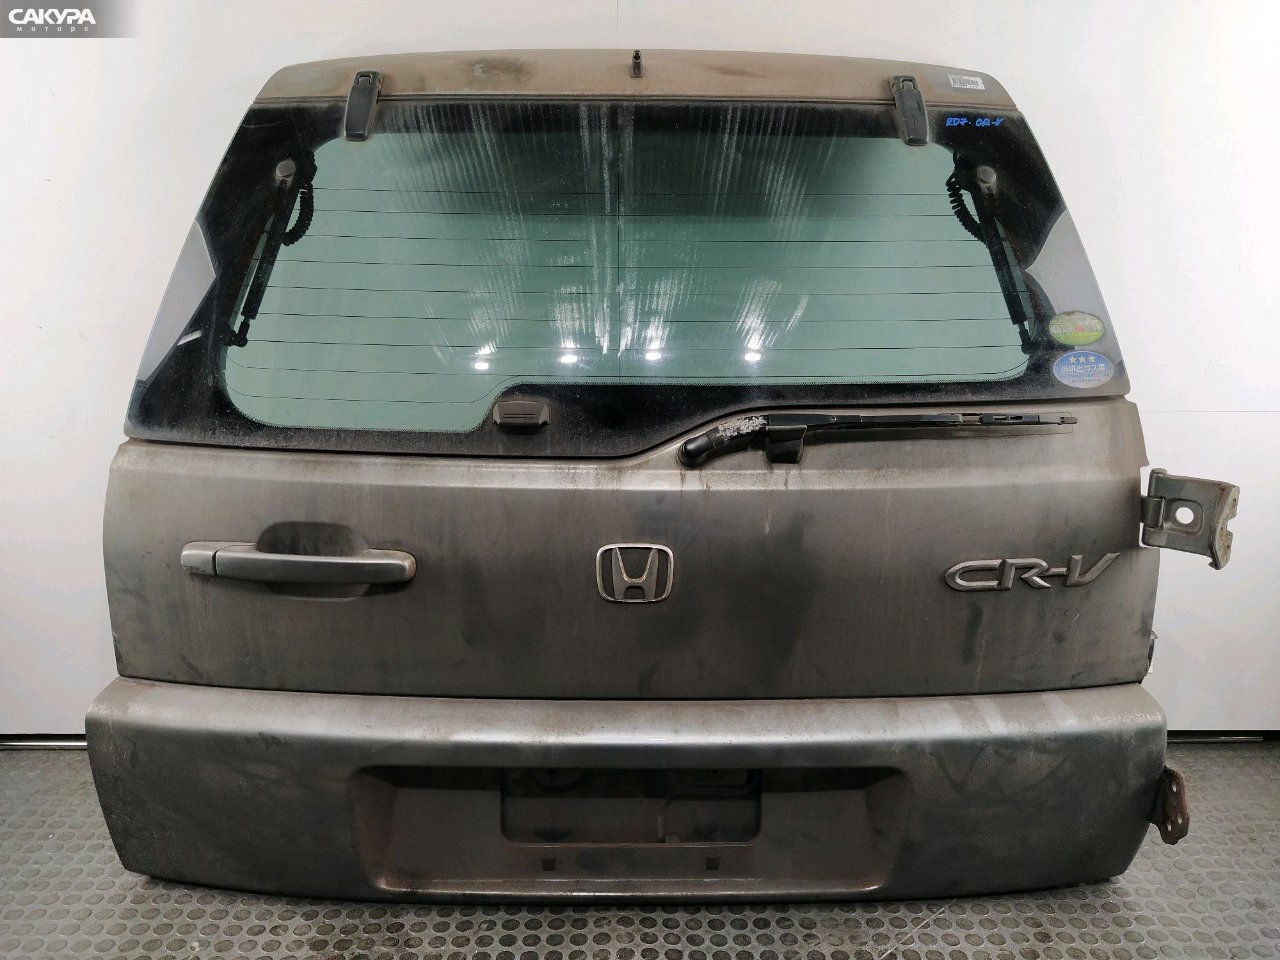 Дверь задняя багажника Honda CR-V RD7 K24A: купить в Сакура Красноярск.